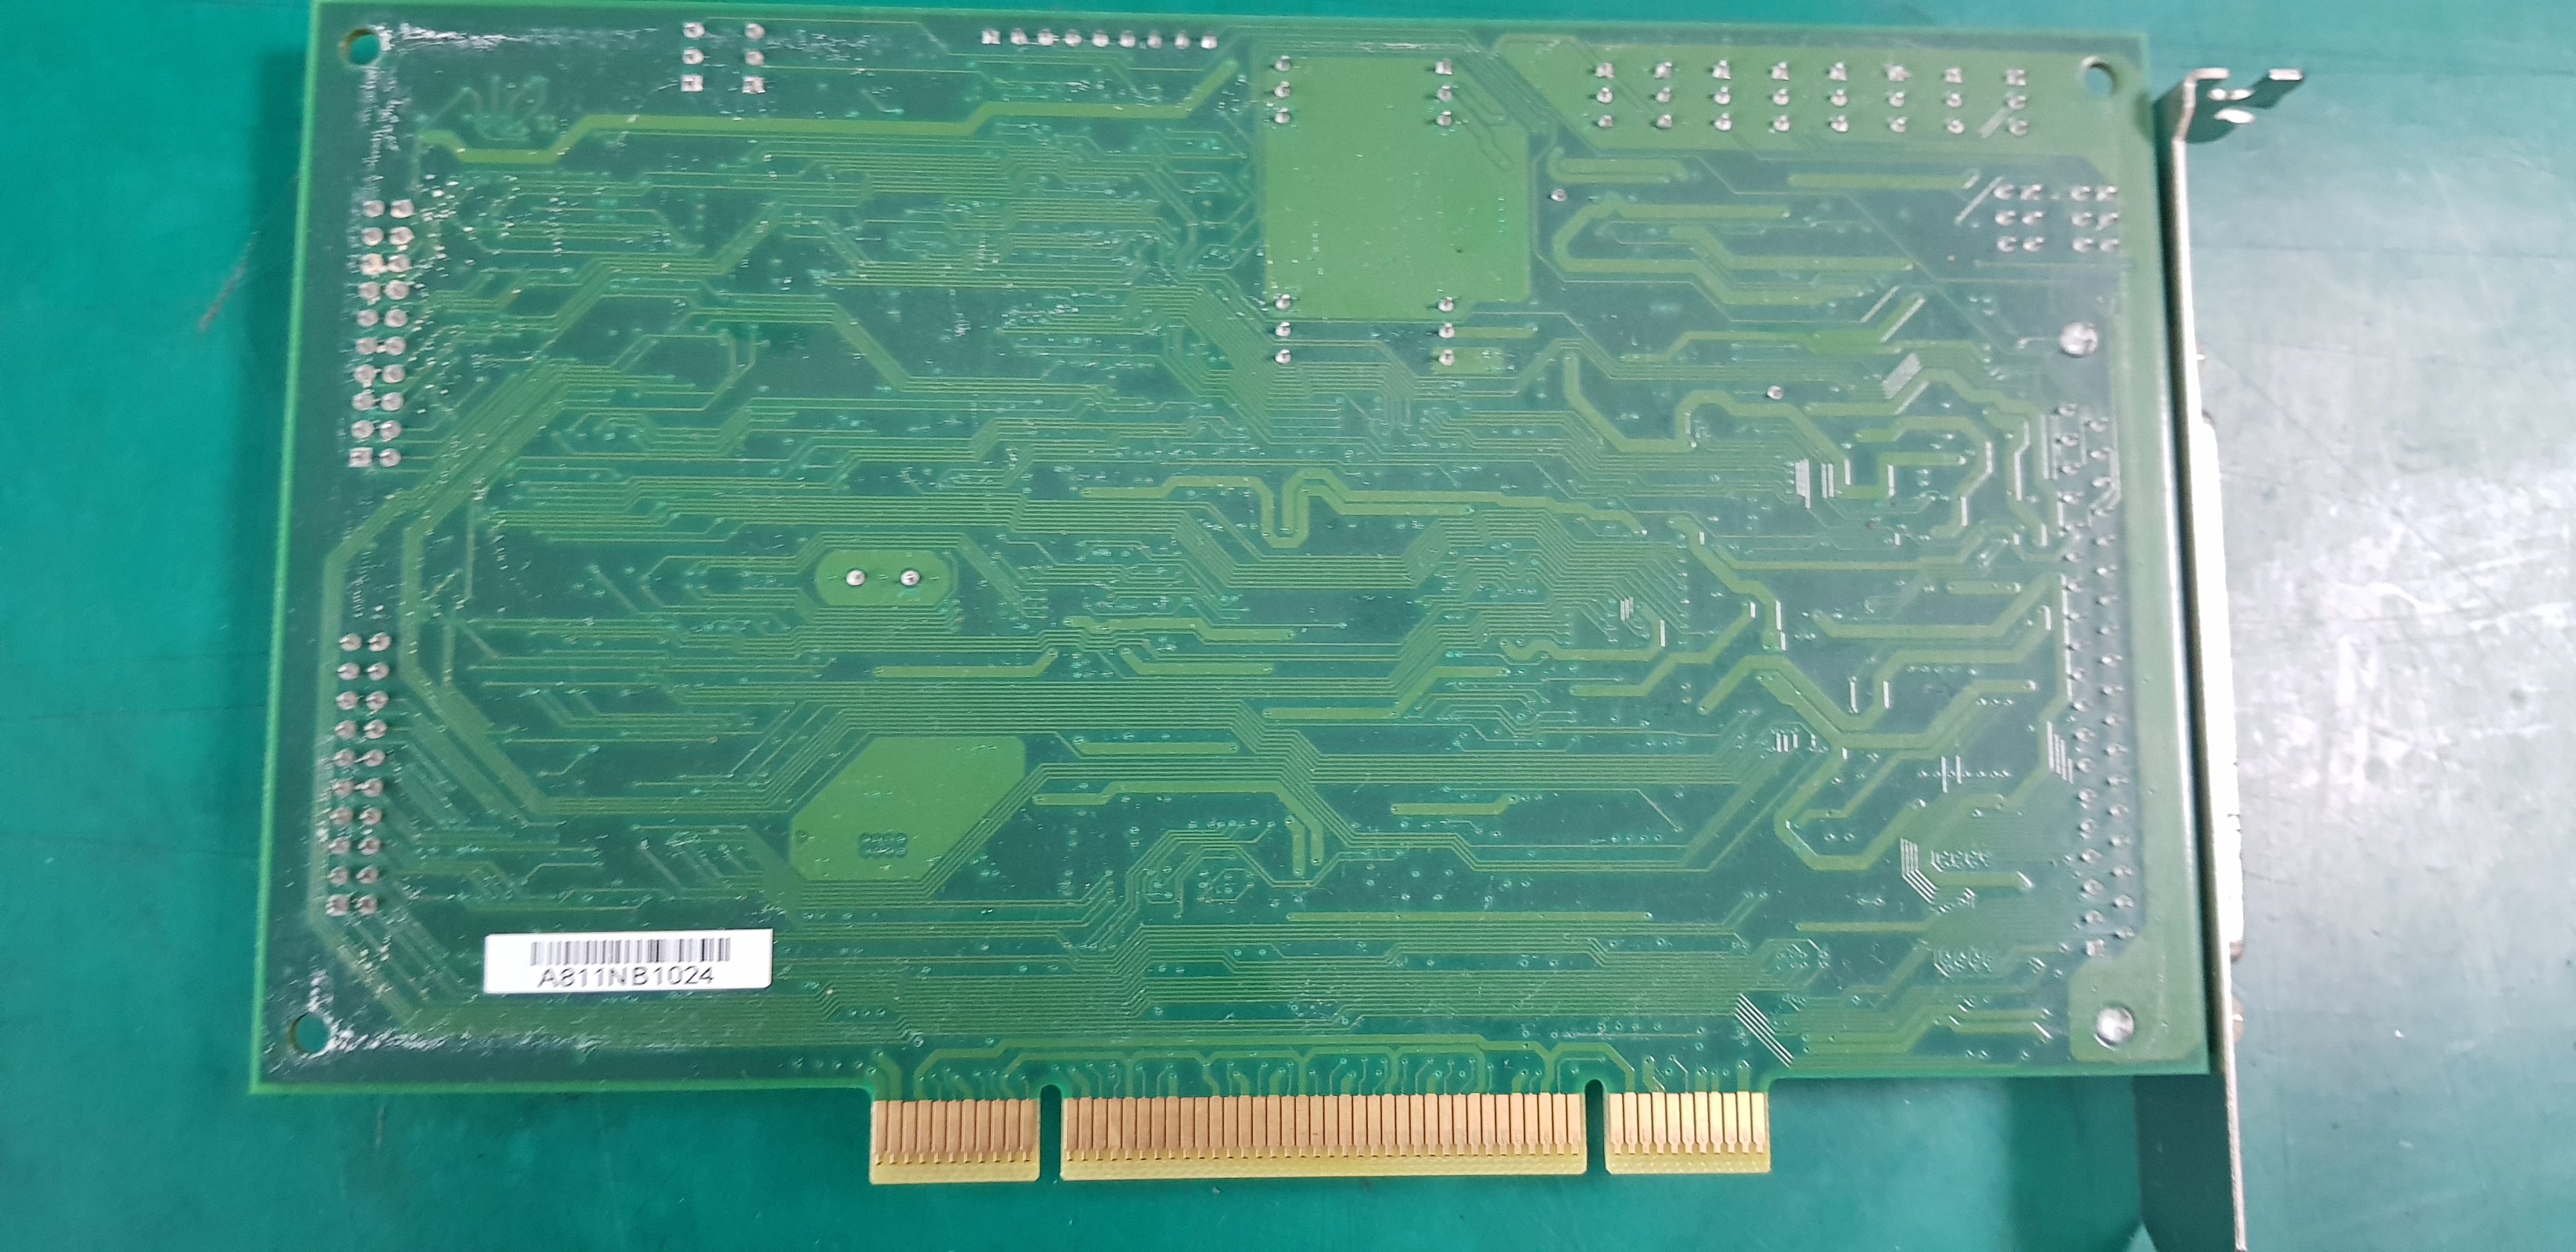 PLOTECH PCI-9112 (중고)